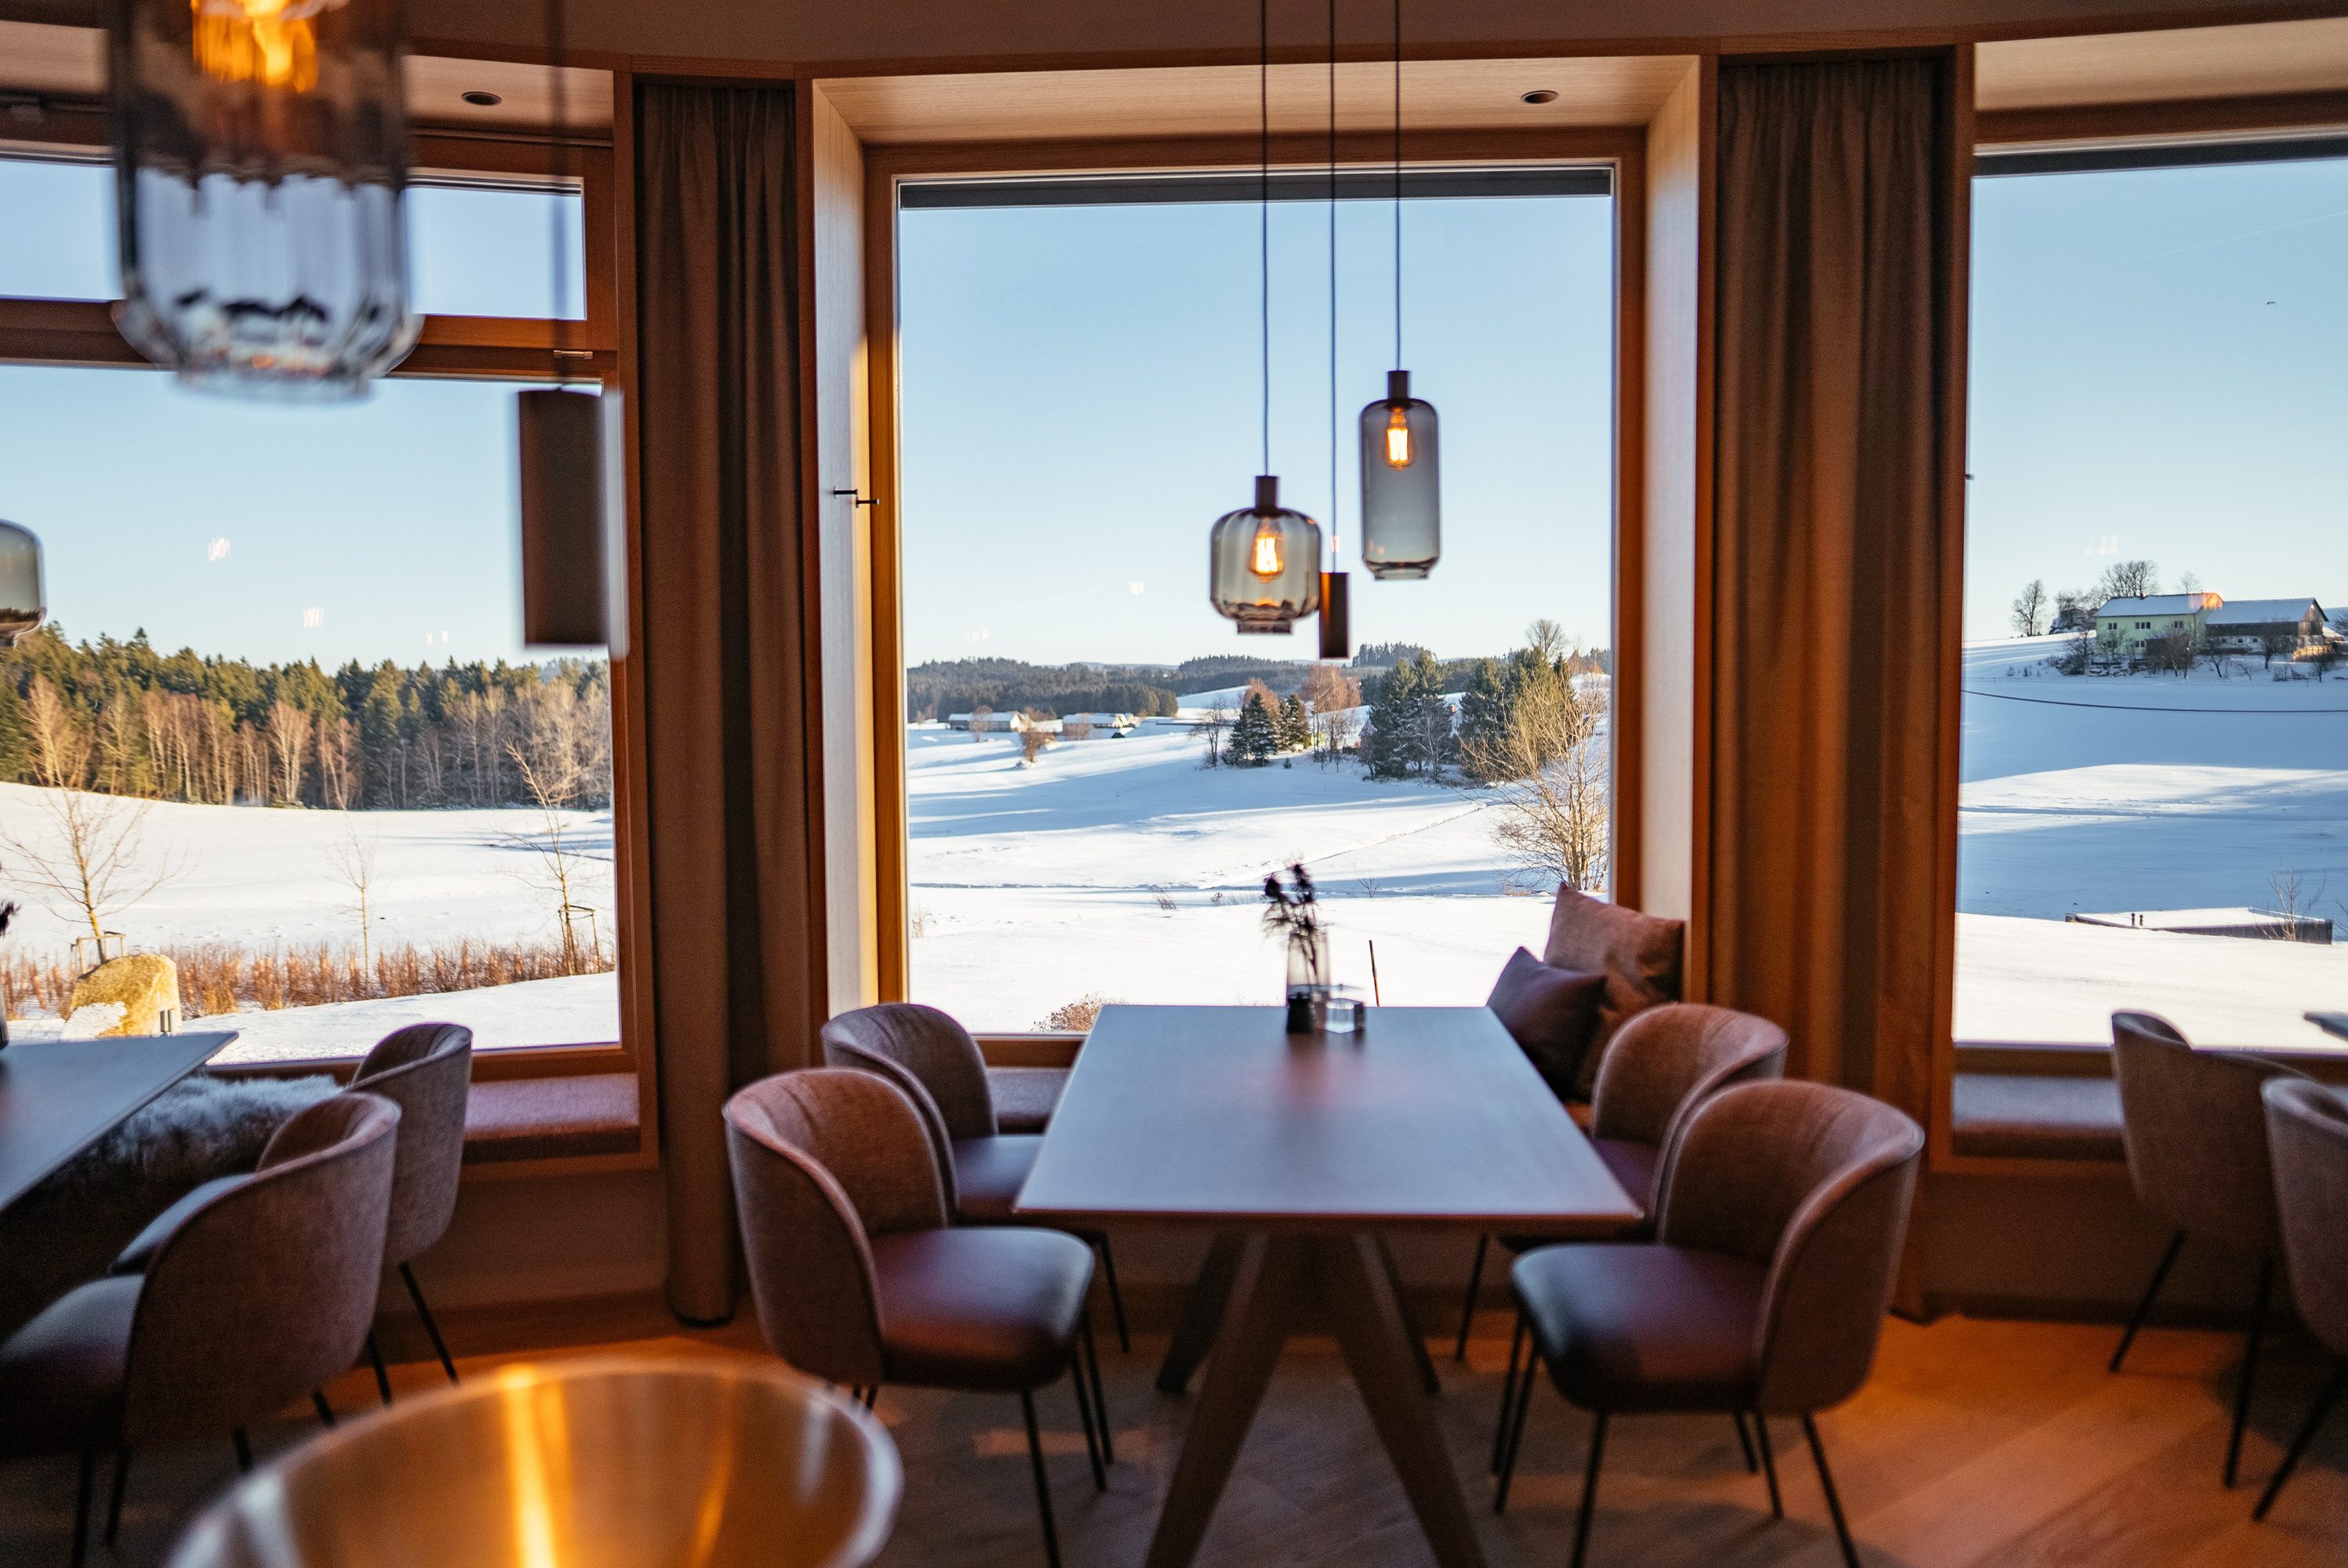 Modernes Restaurant mit Waldviertler Weitblick